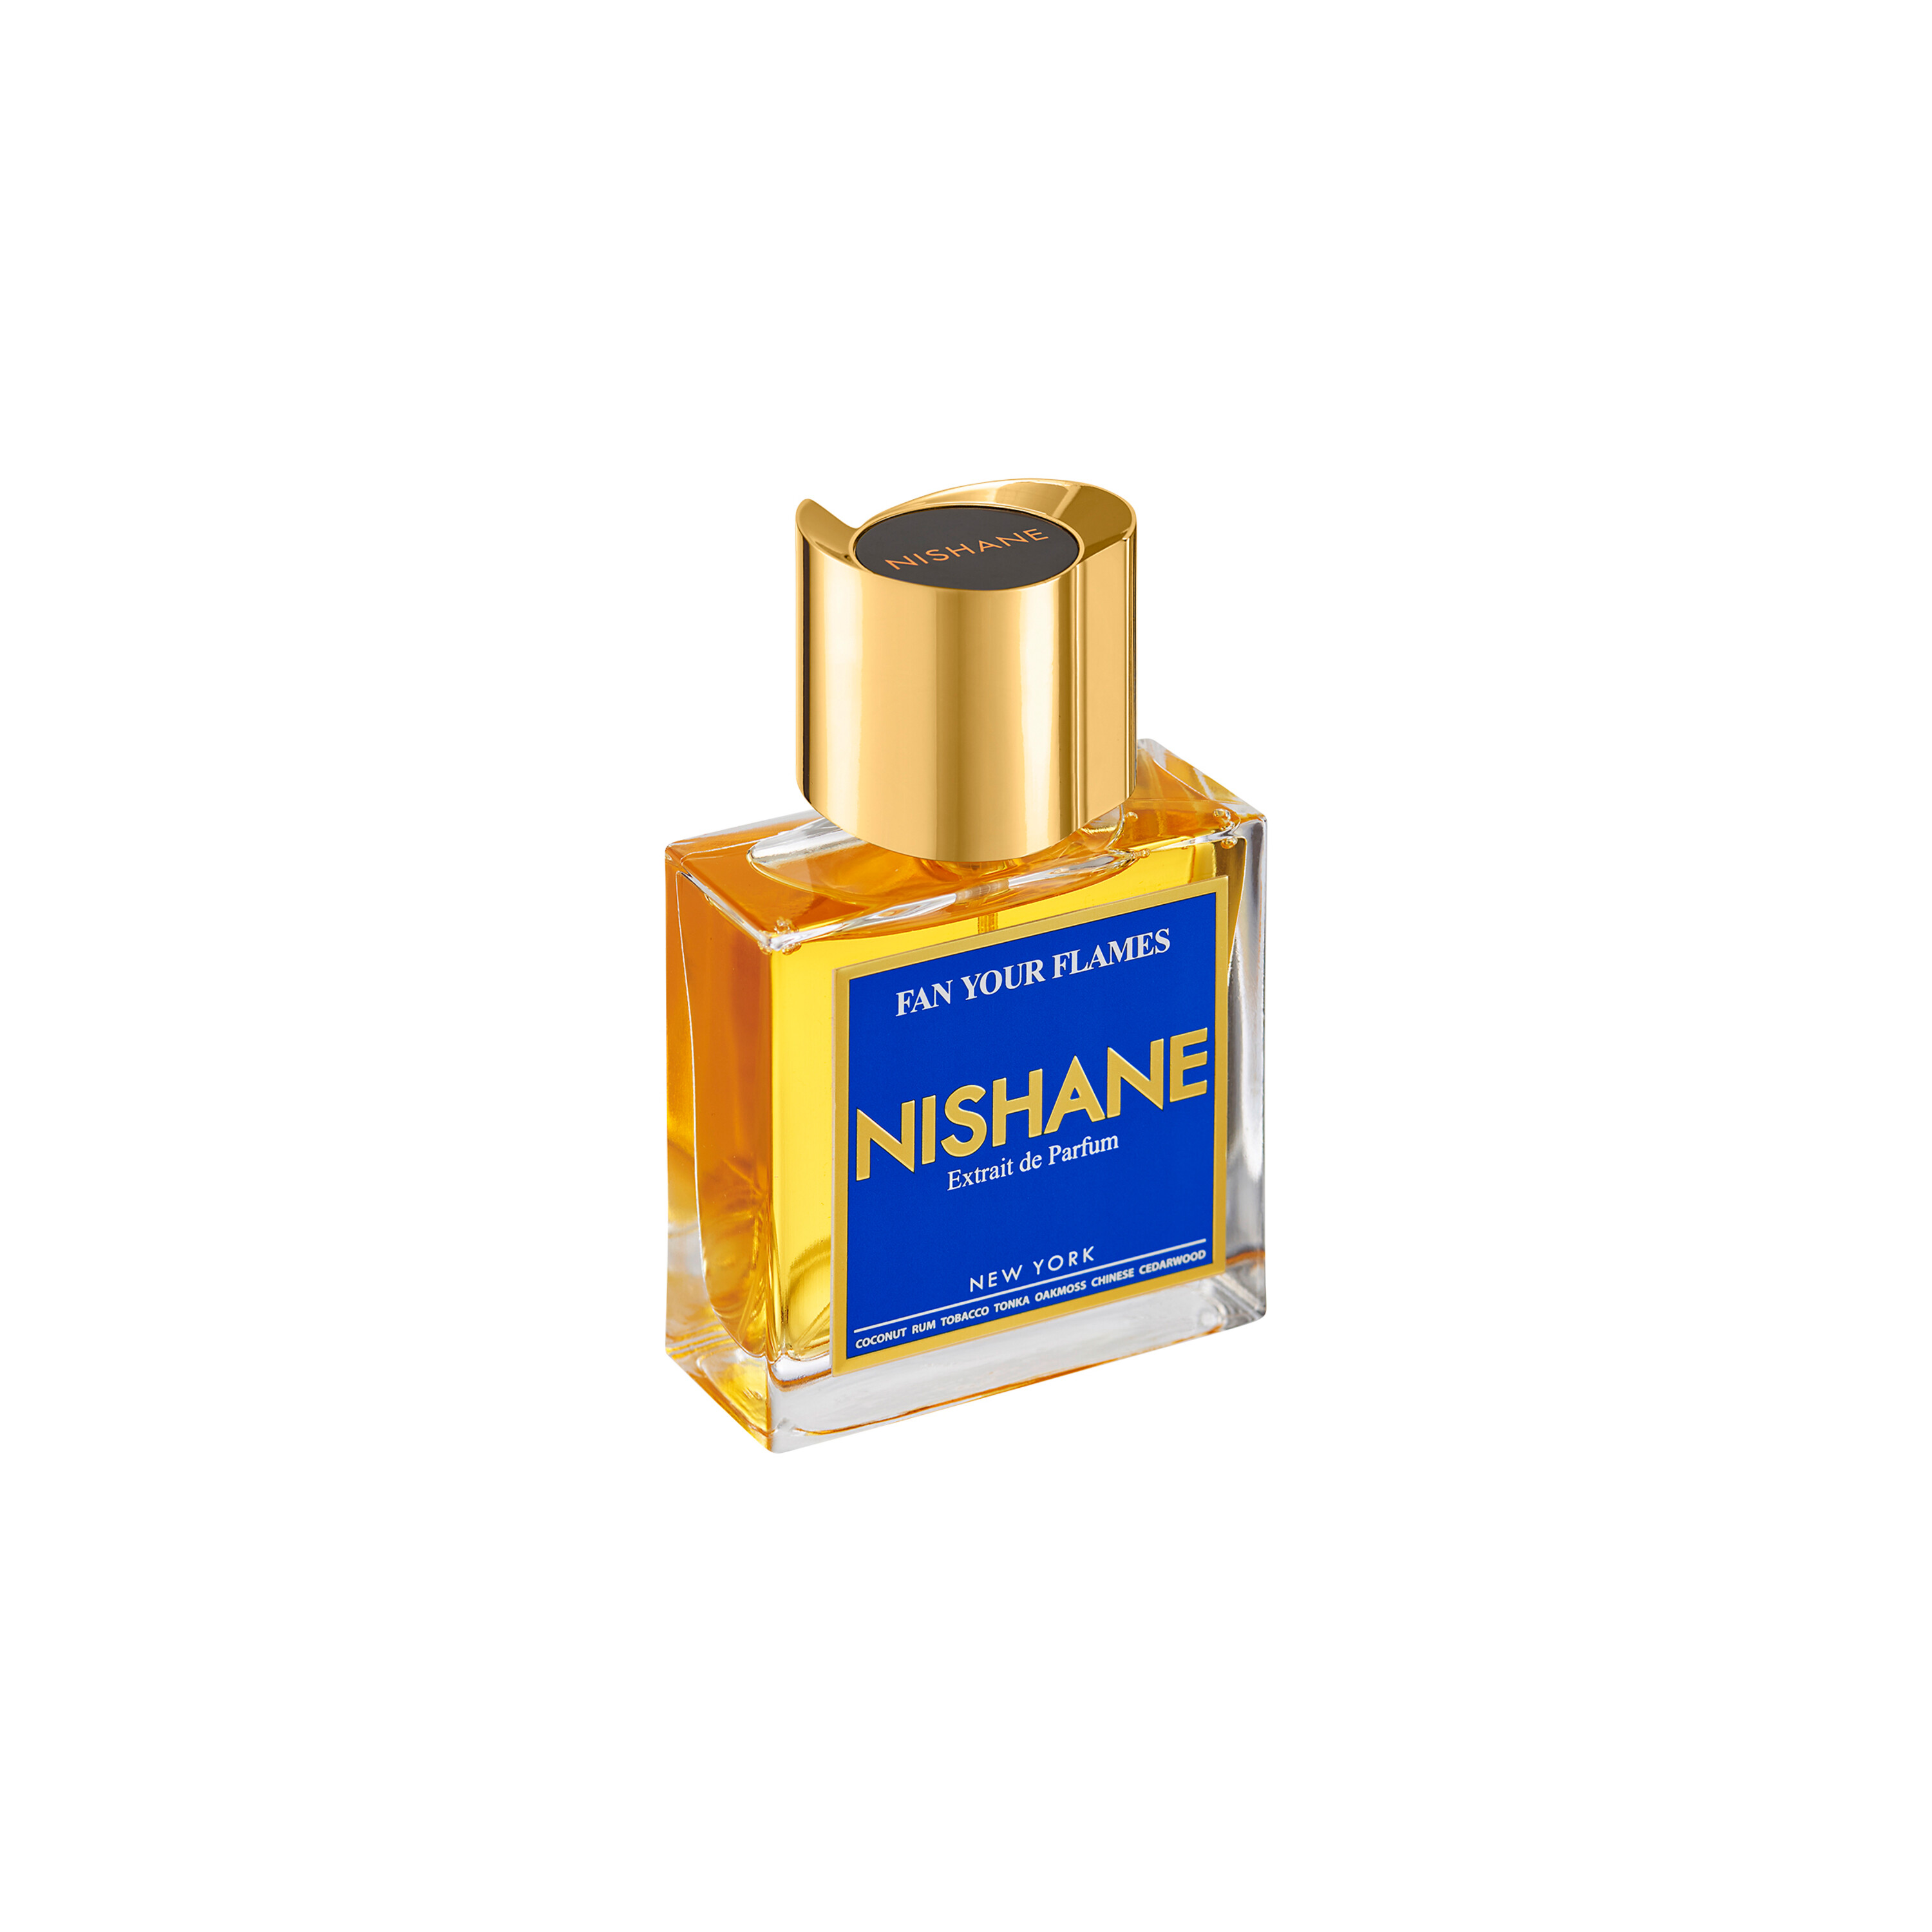 NISHANE Fan Your Flames Extrait de Parfum 50ml